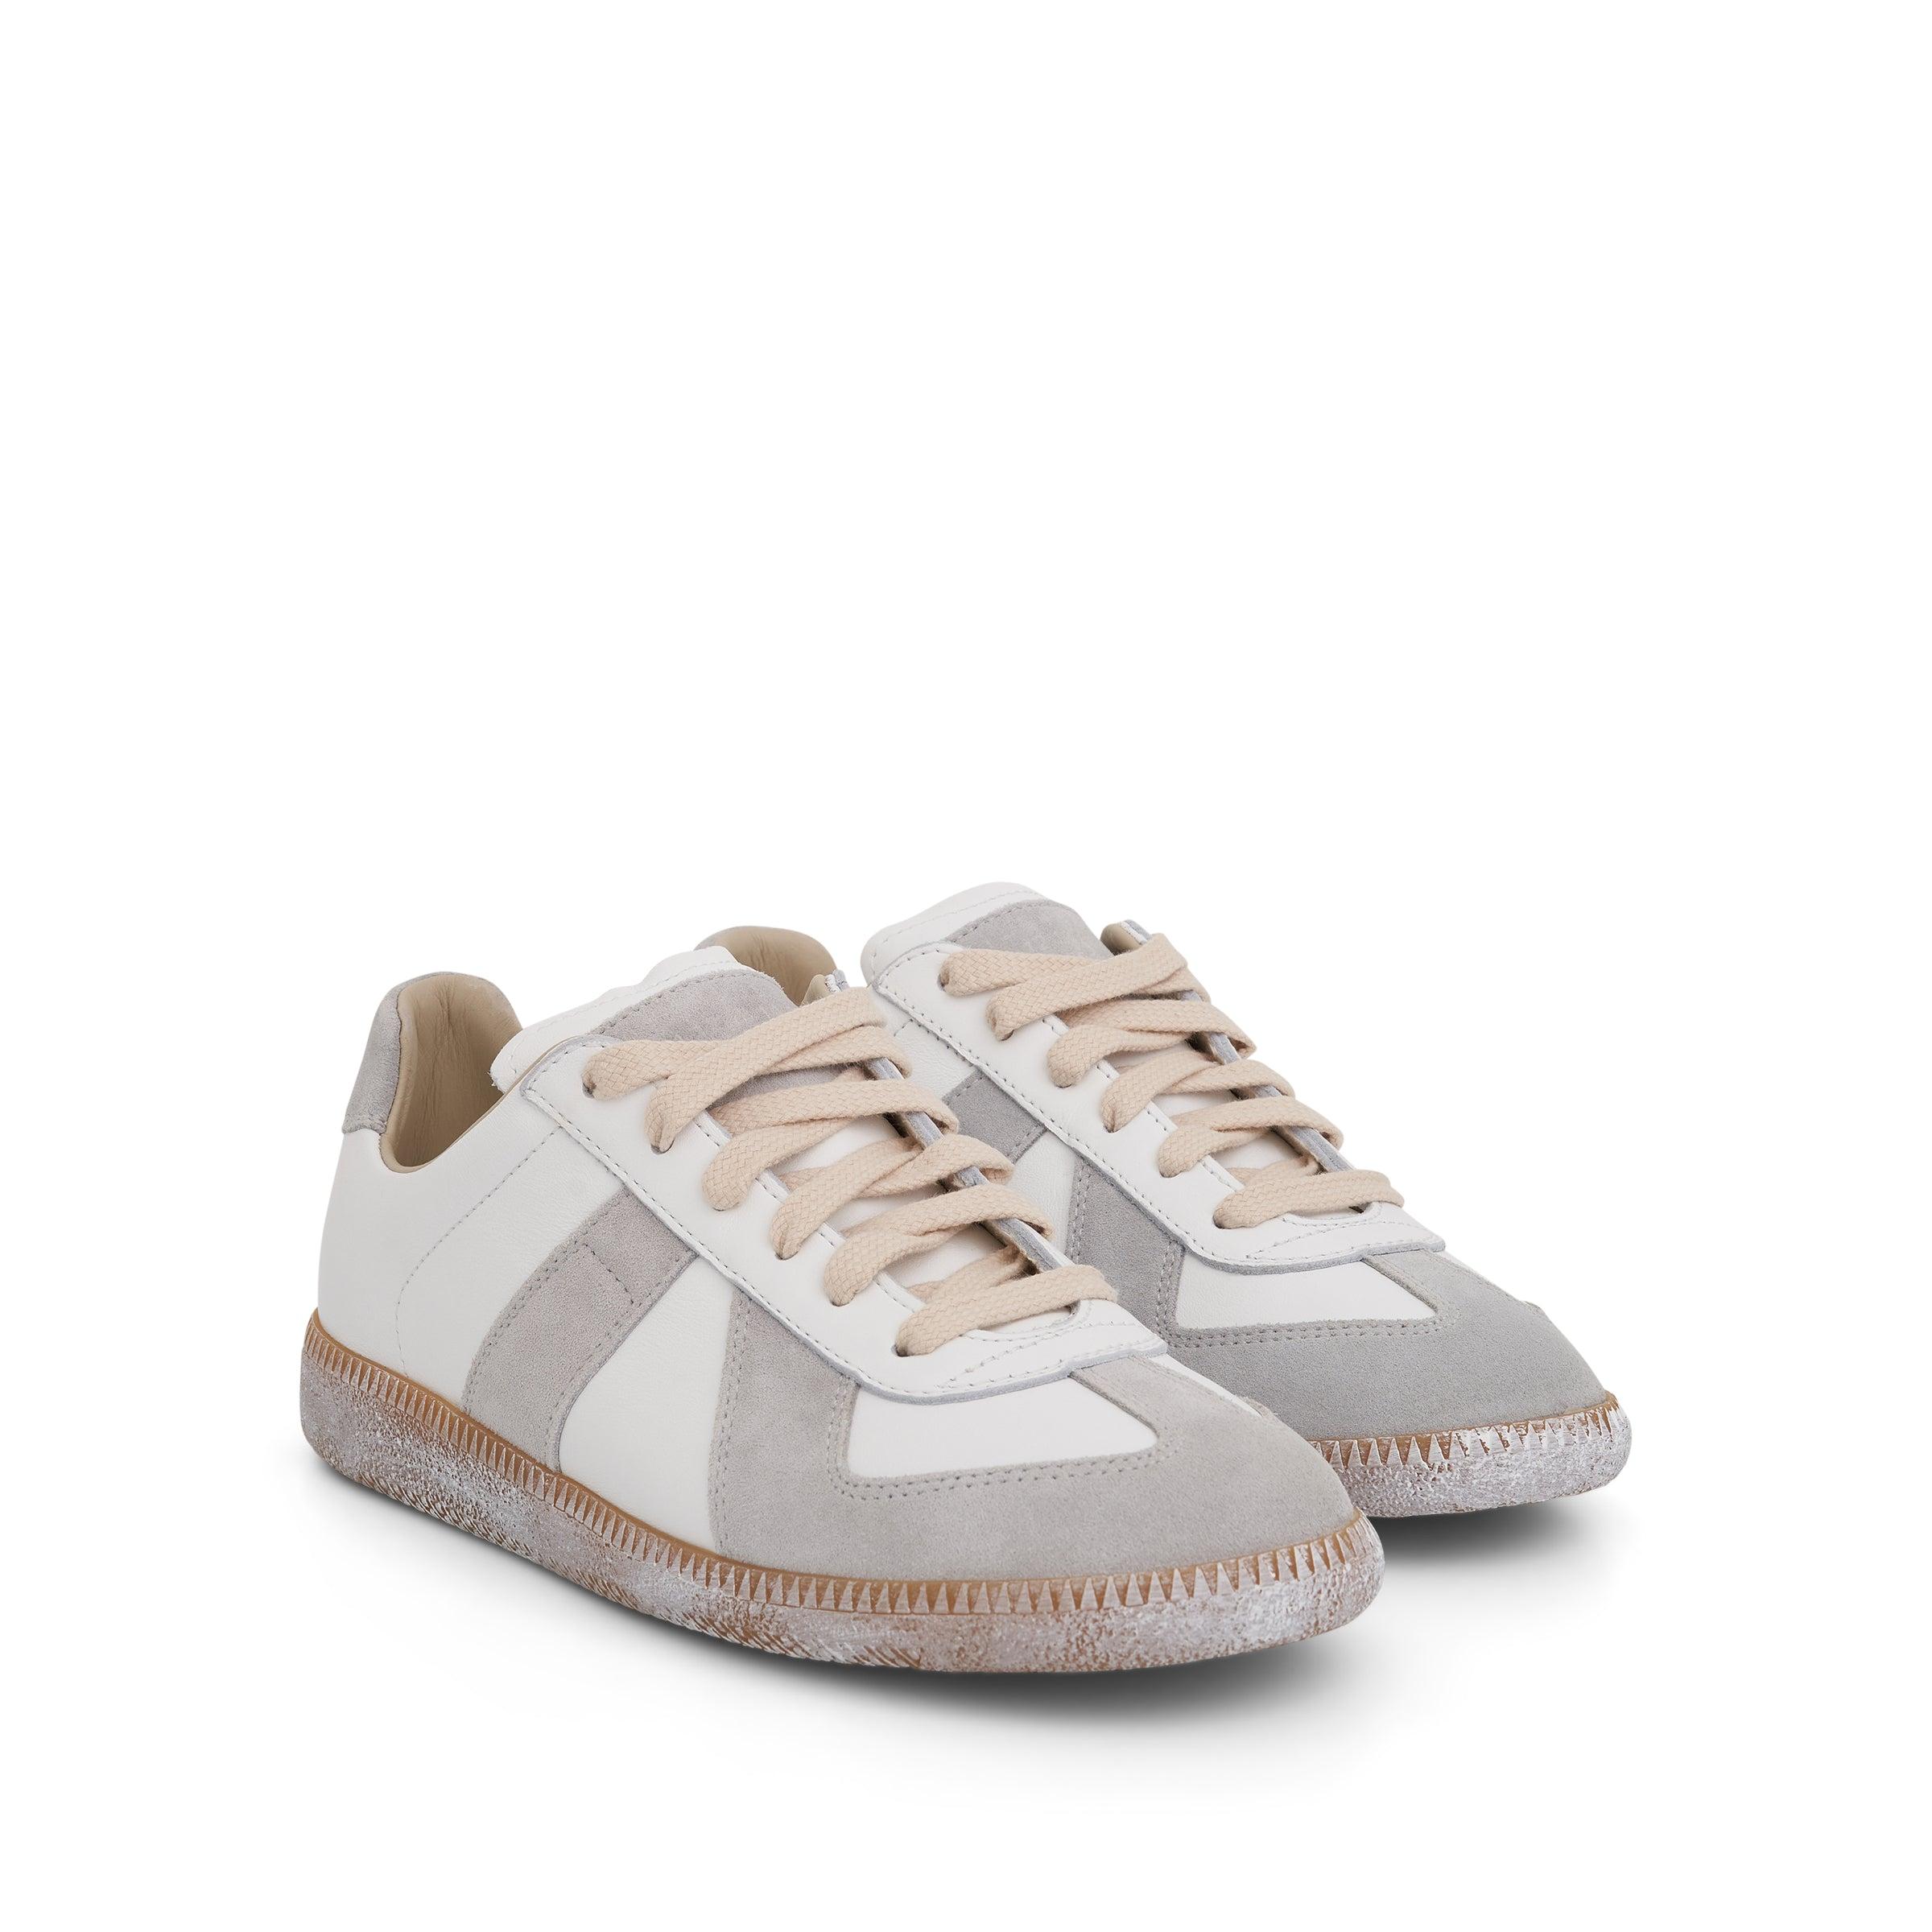 Maison Margiela Replica Sneaker In Off White/honey Sole in Gray | Lyst